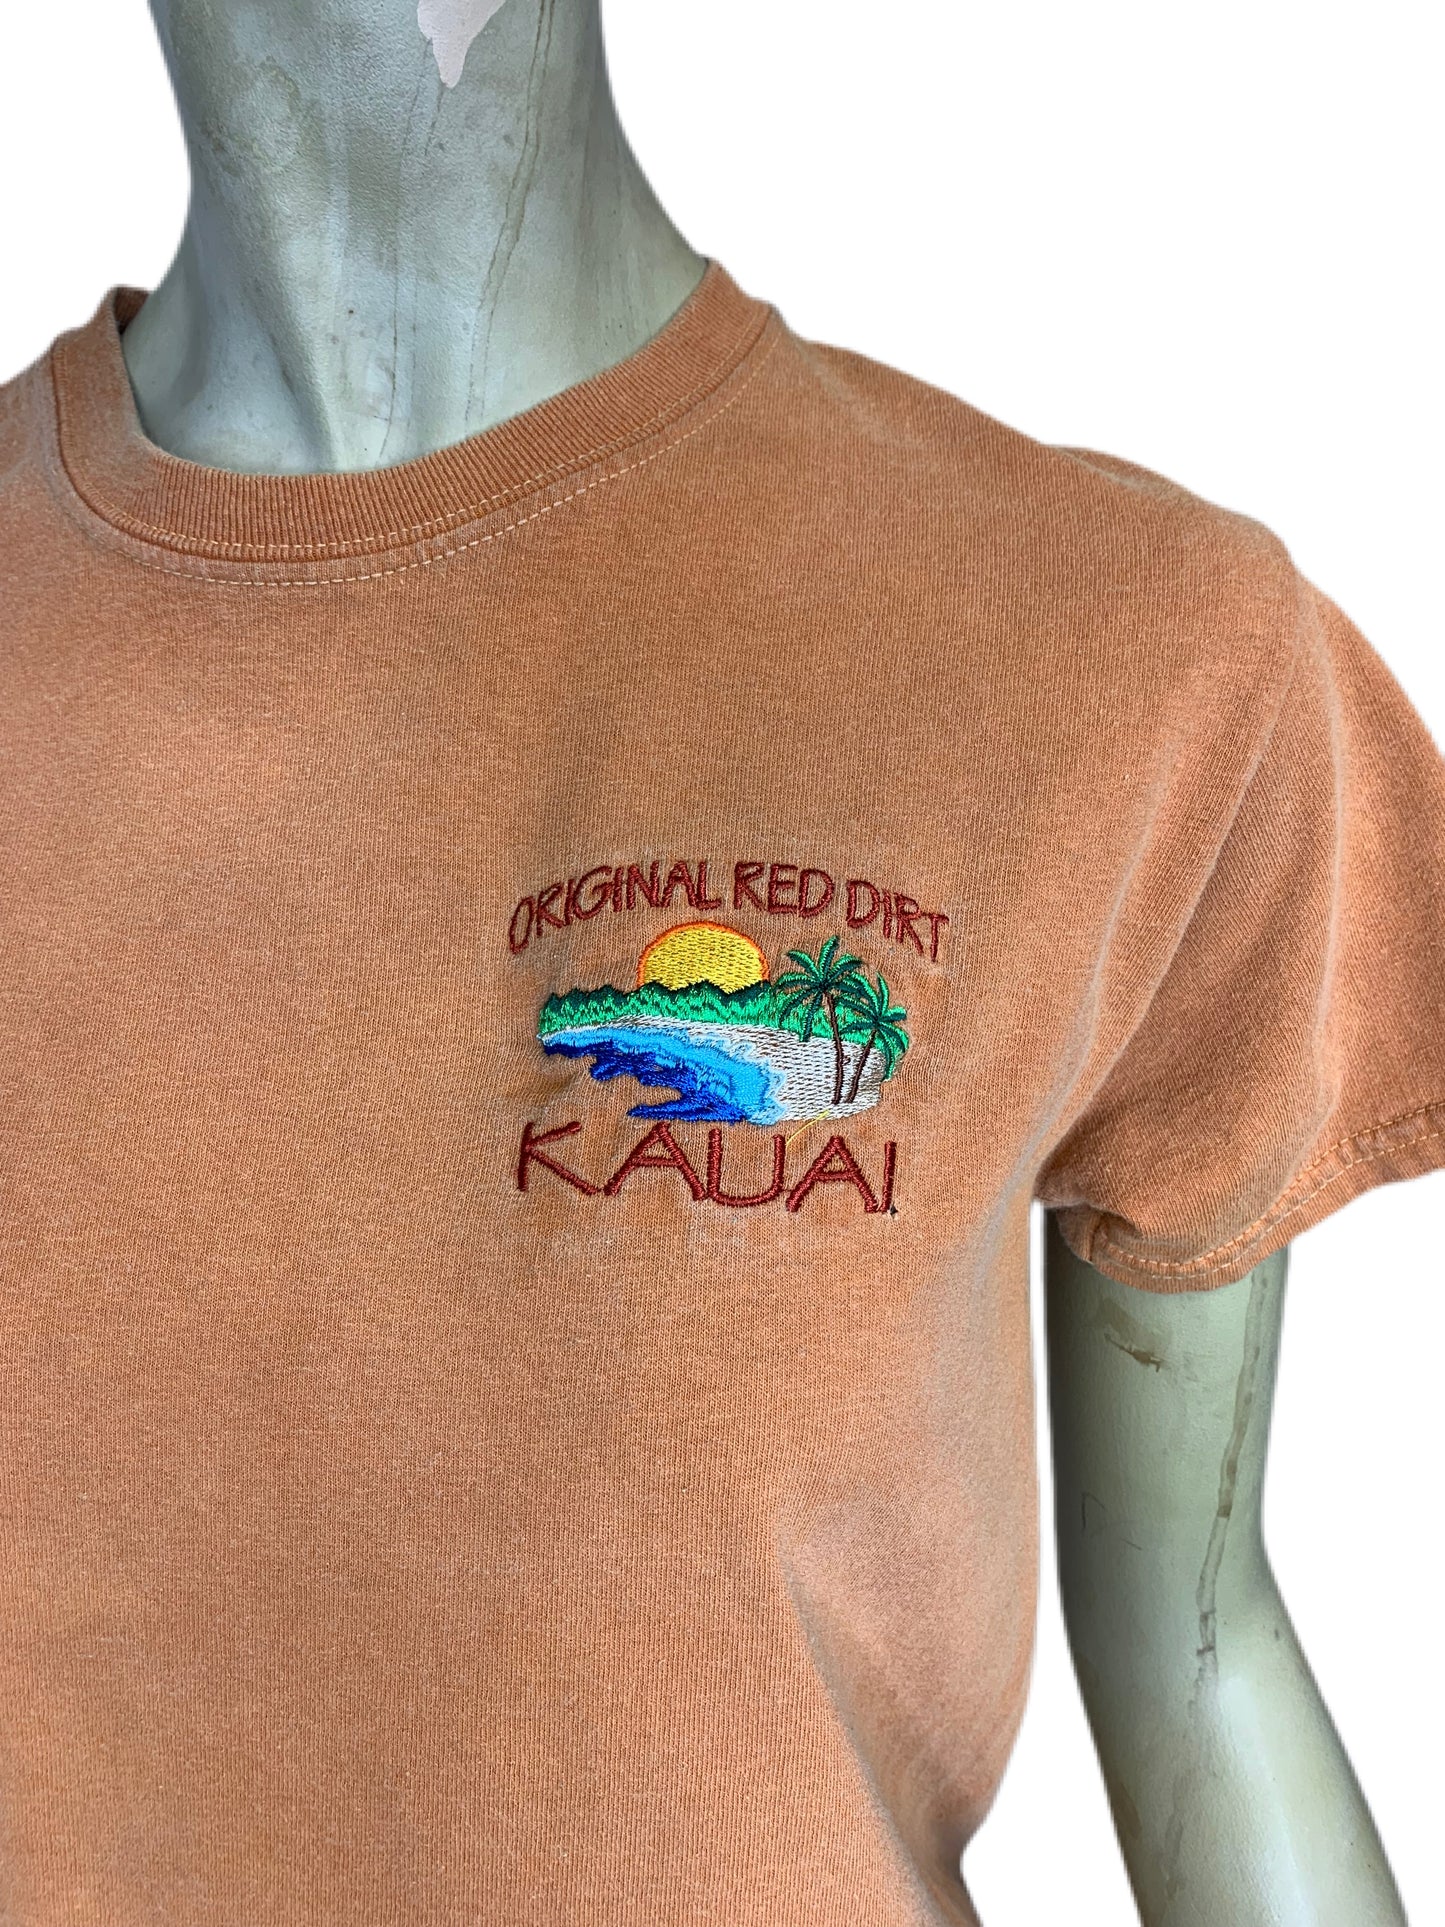 Kauai Original Red Dirt Shirt